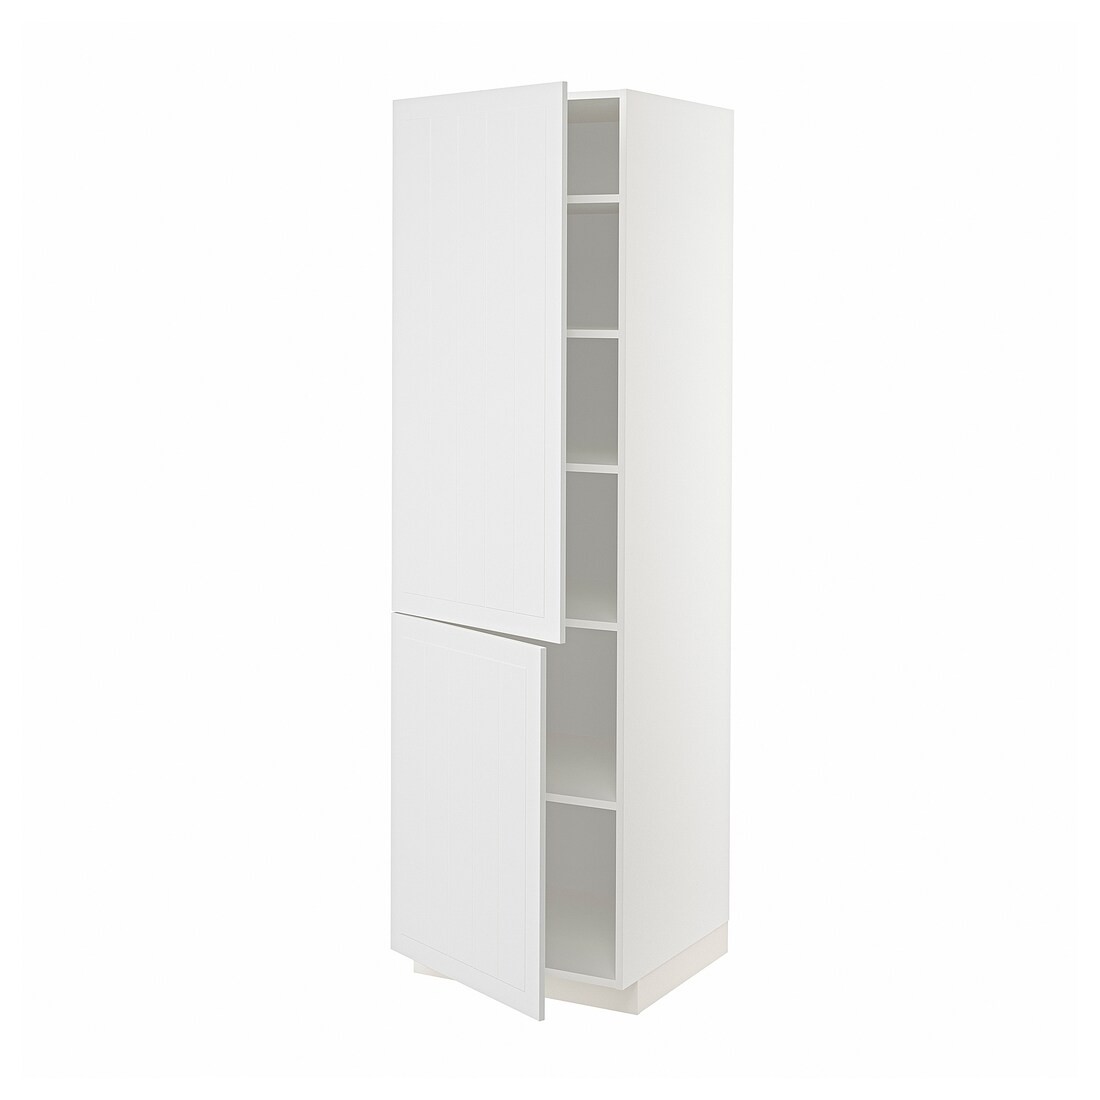 METOD МЕТОД Высокий шкаф с полками / 2 дверцы, белый / Stensund белый, 60x60x200 см